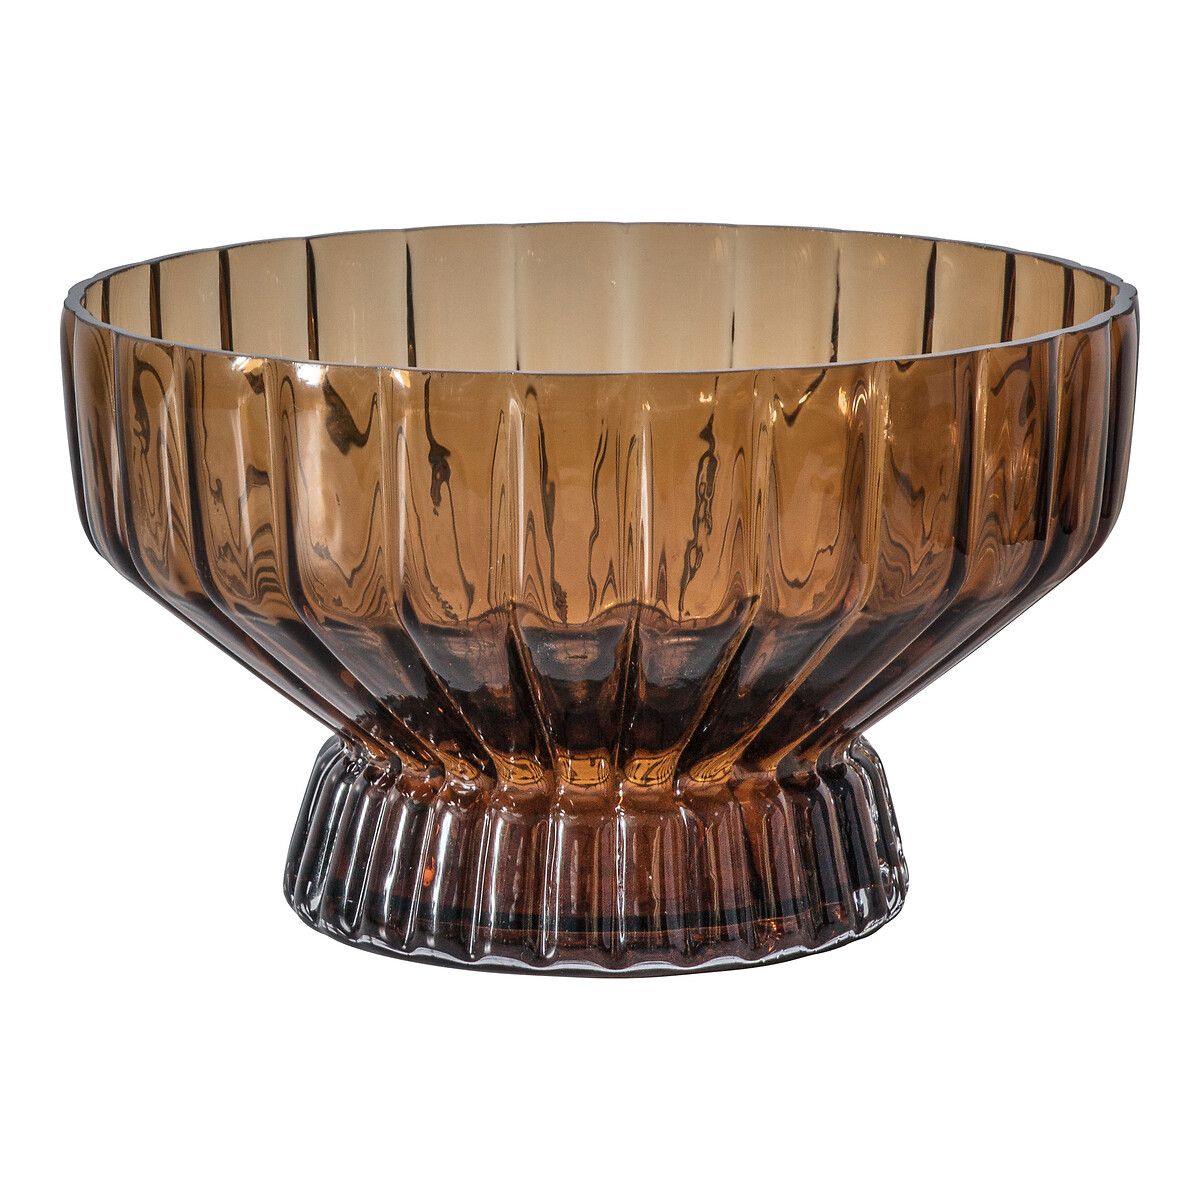 24x15cm Decorative Bowl | La Redoute (UK)